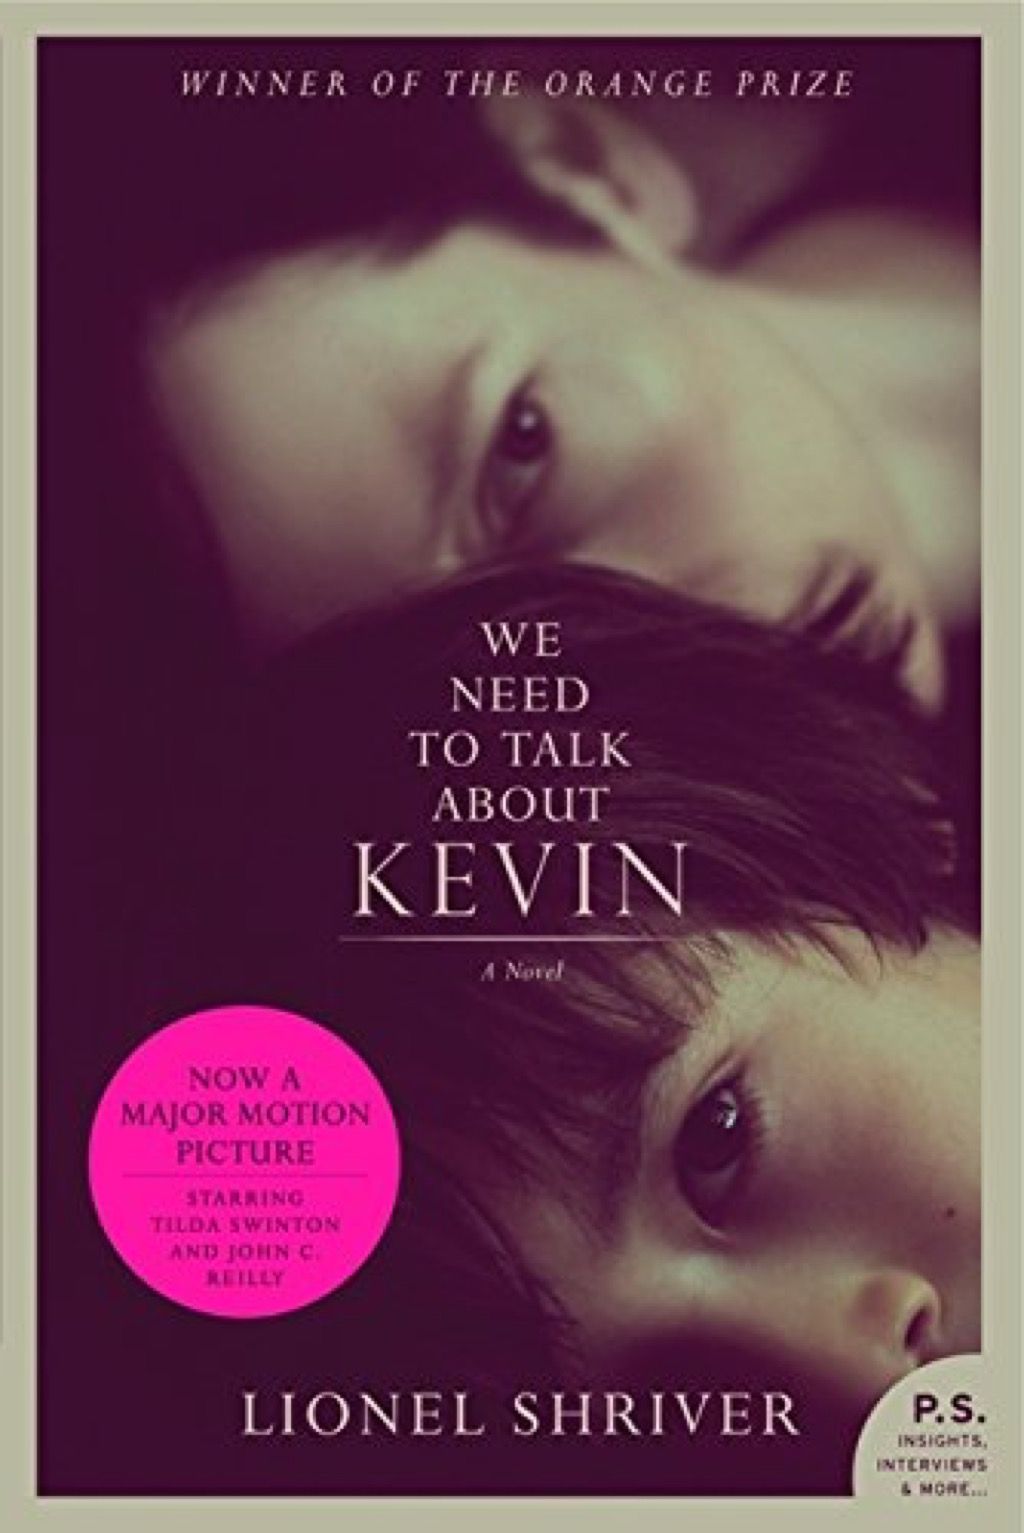 трябва да говорим за книги с кевин, които всяка жена трябва да чете на 40 години